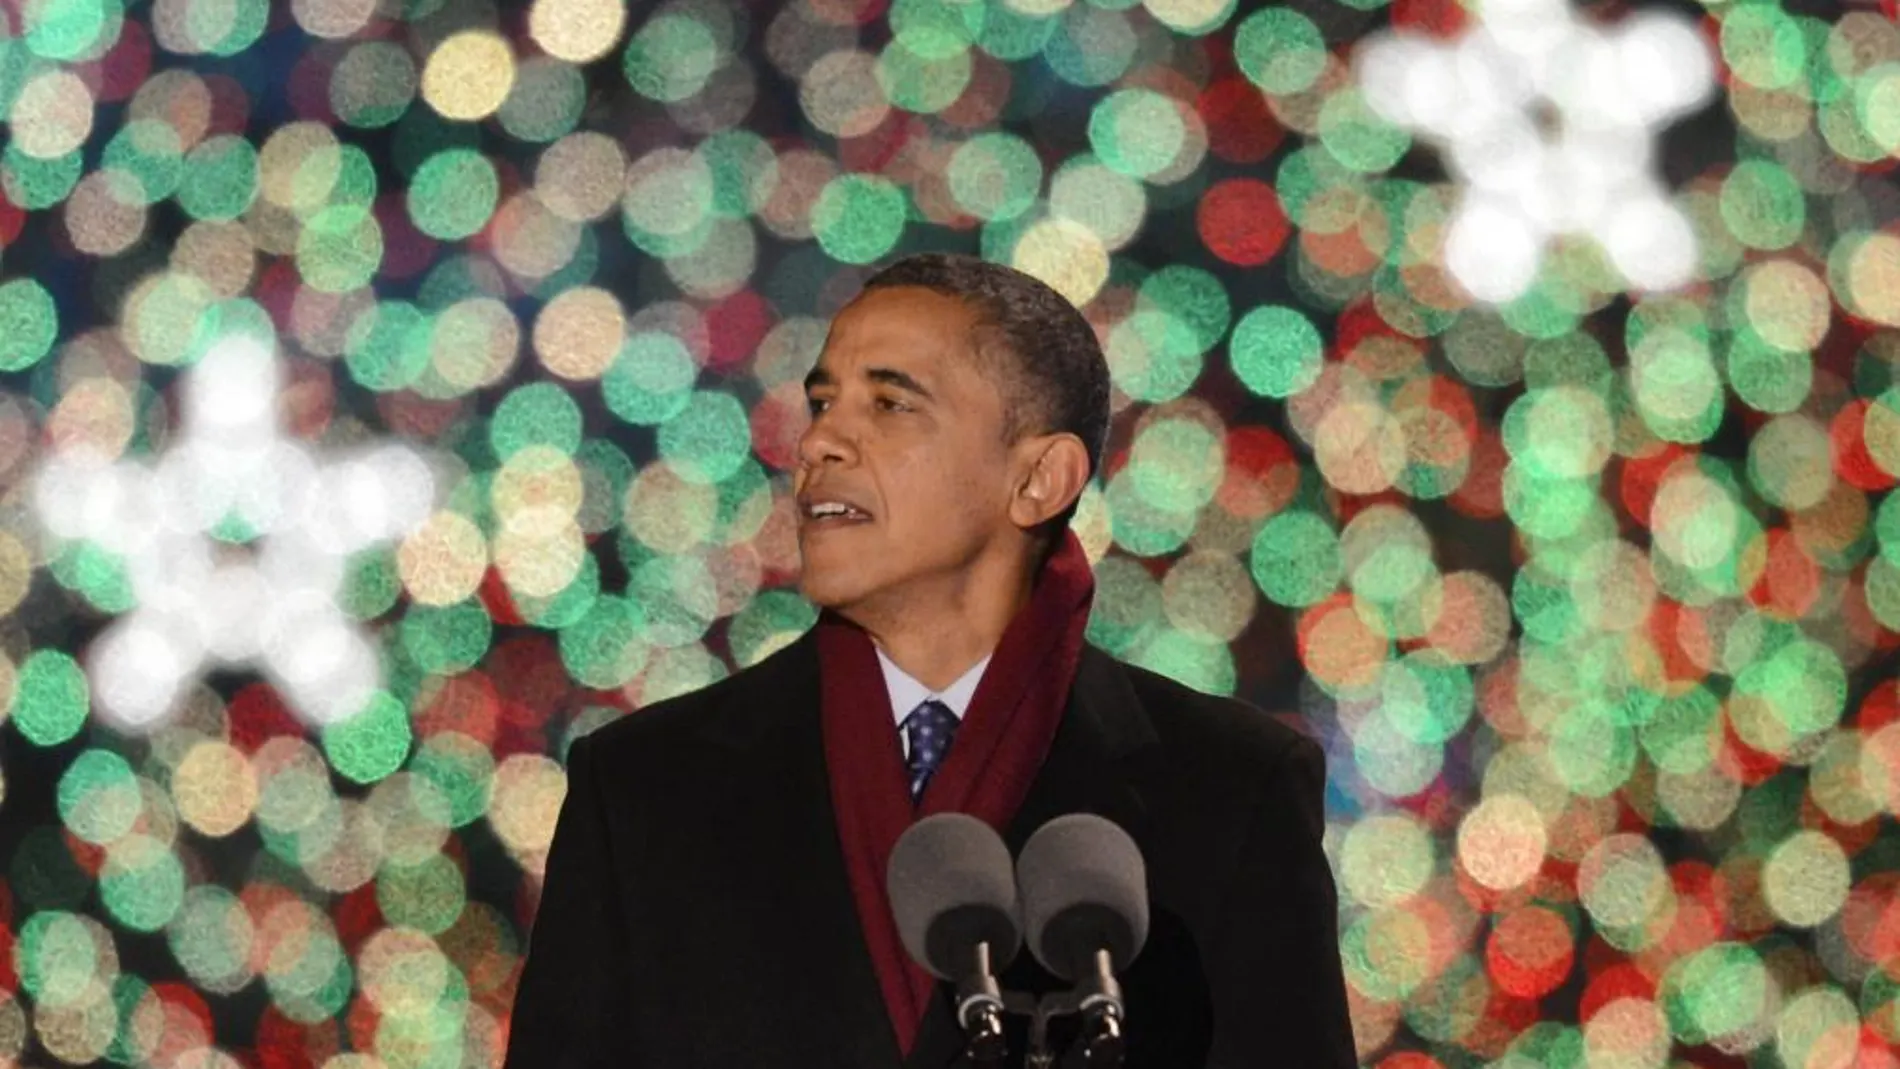 El presidente de Estados Unidos, Barack Obama, pronuncia un discurso durante el encendido del Árbol Nacional de Navidad el jueves 6 de diciembre de 2012